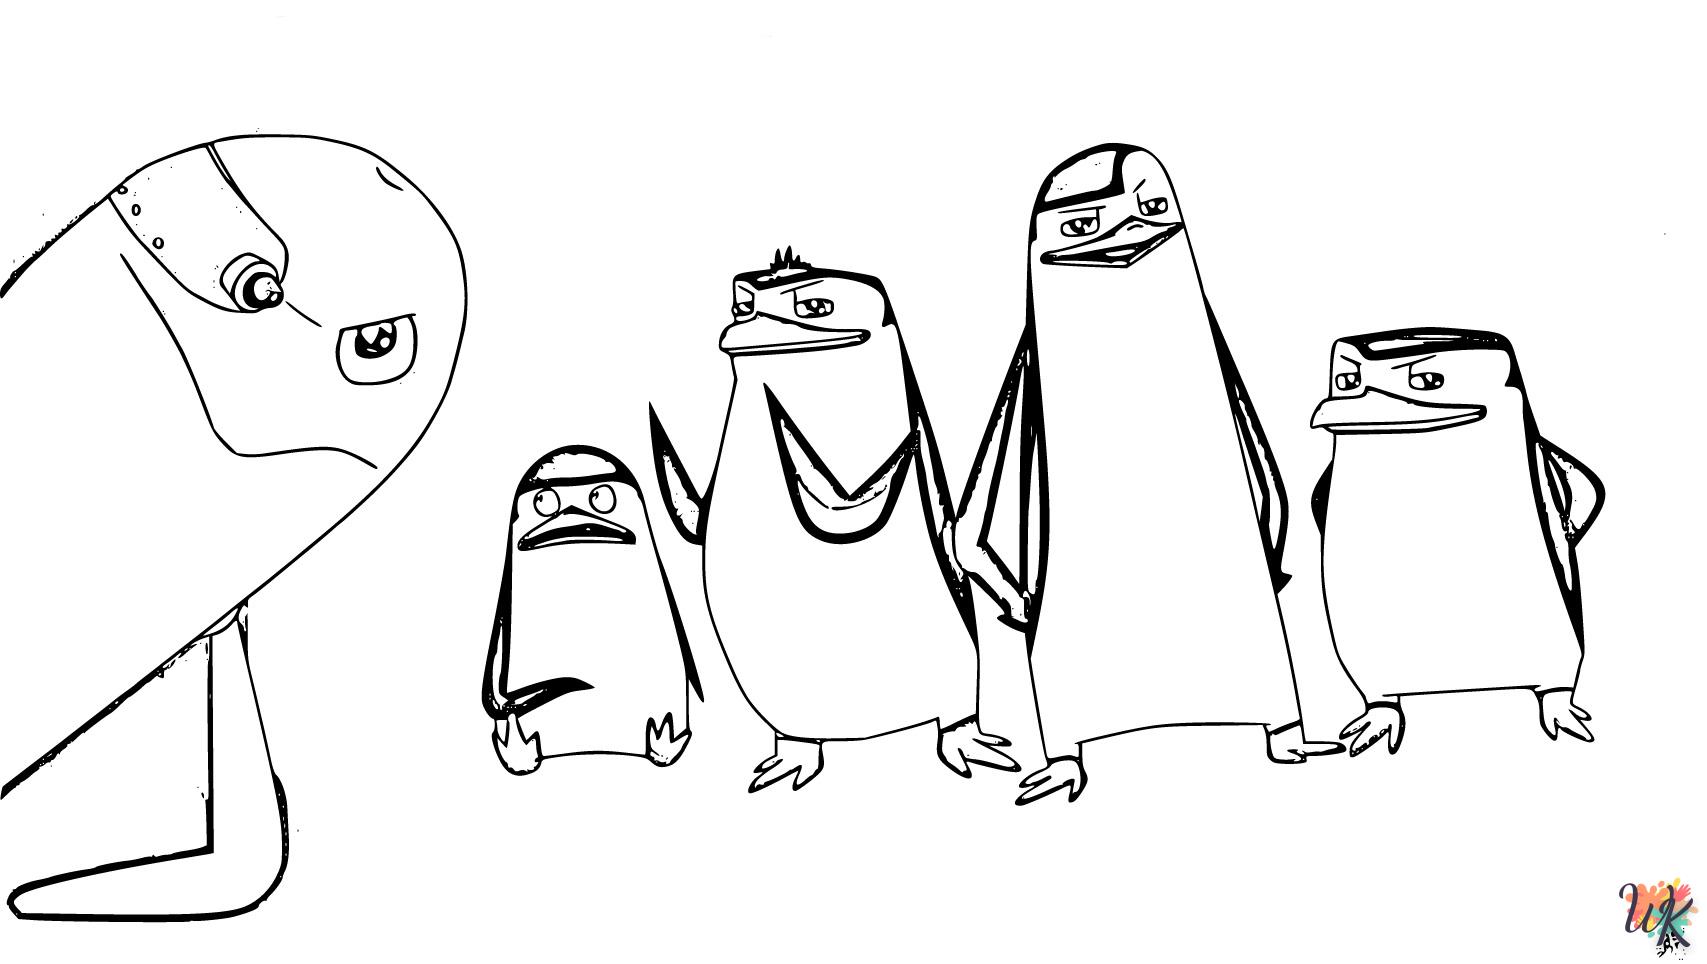 Pingouins de Madagascar 15